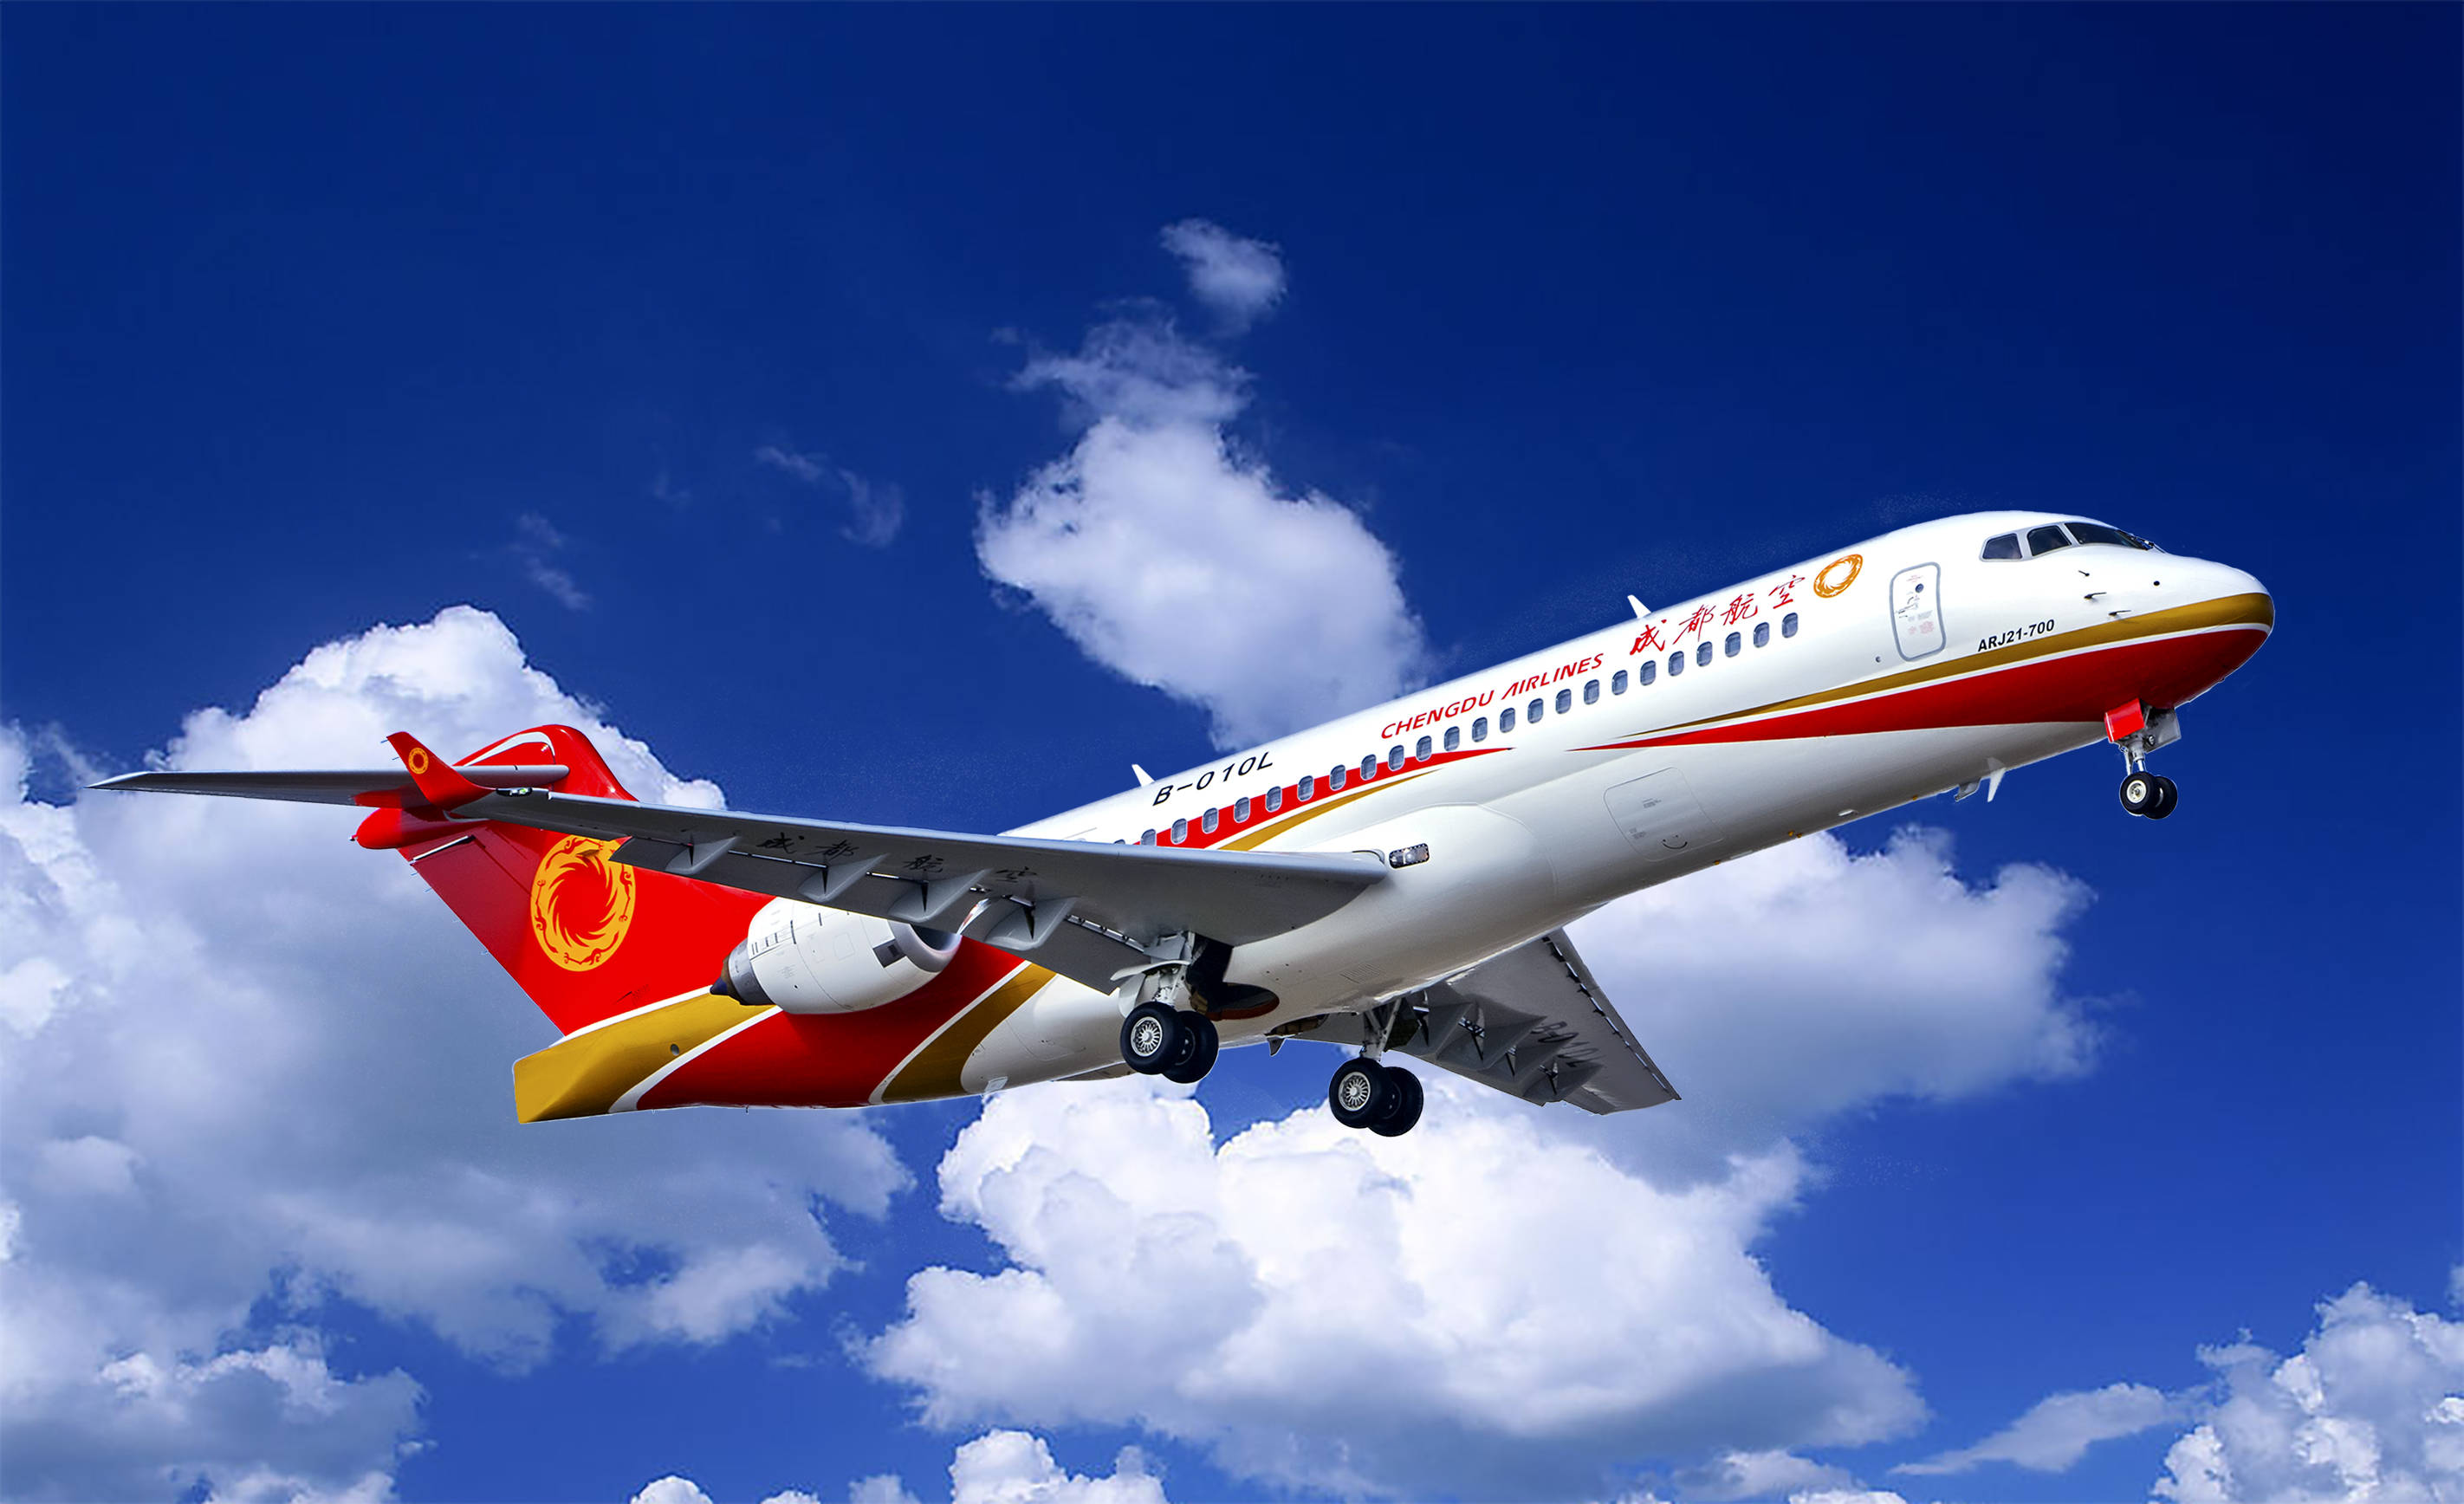 c919大型客机是中国商用飞机有限责任公司的杰作,代表了中国自主研发